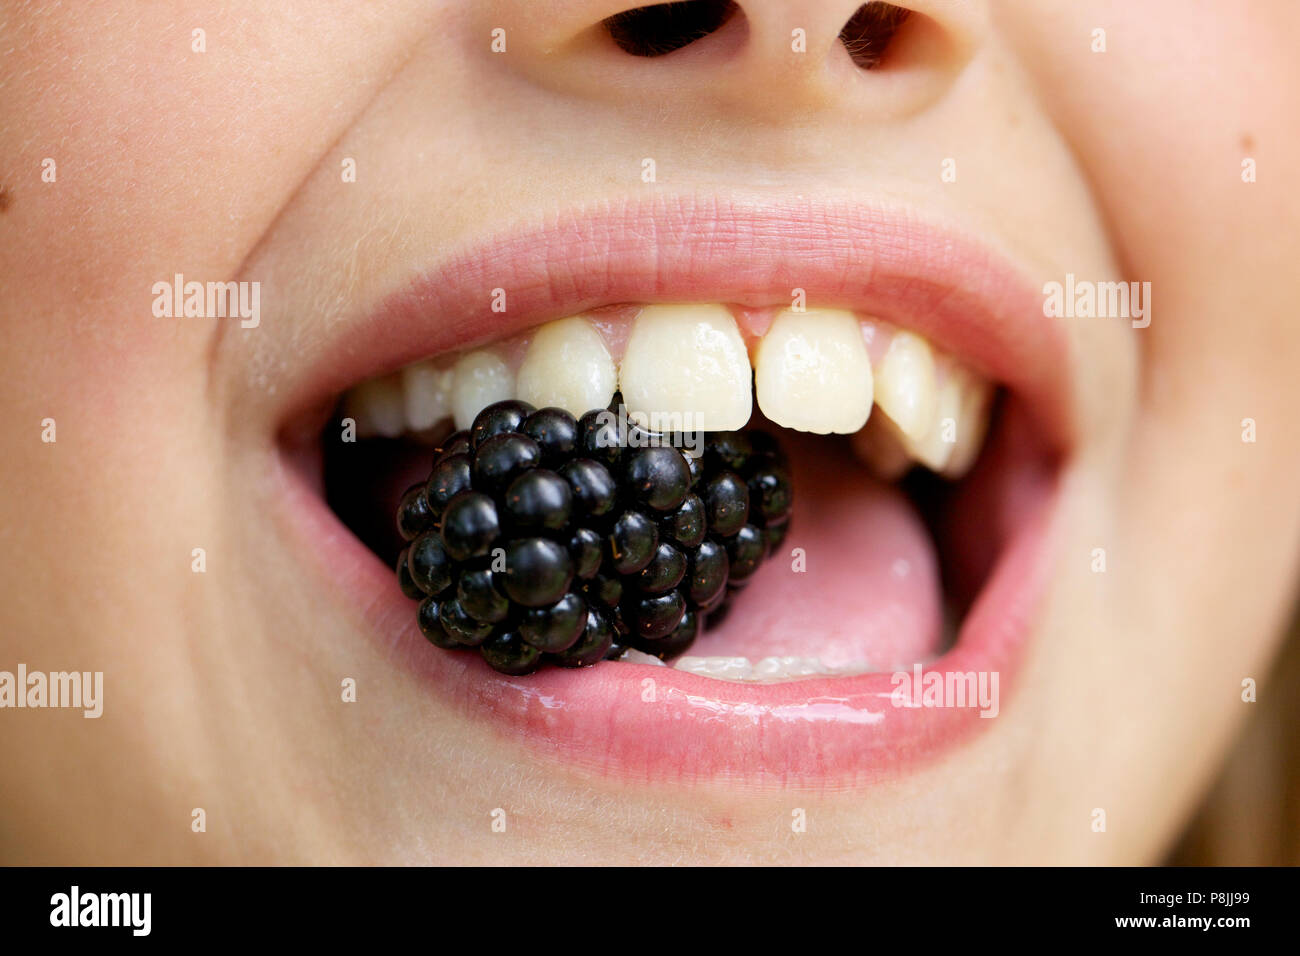 Girl eating a Blackberry Stock Photo